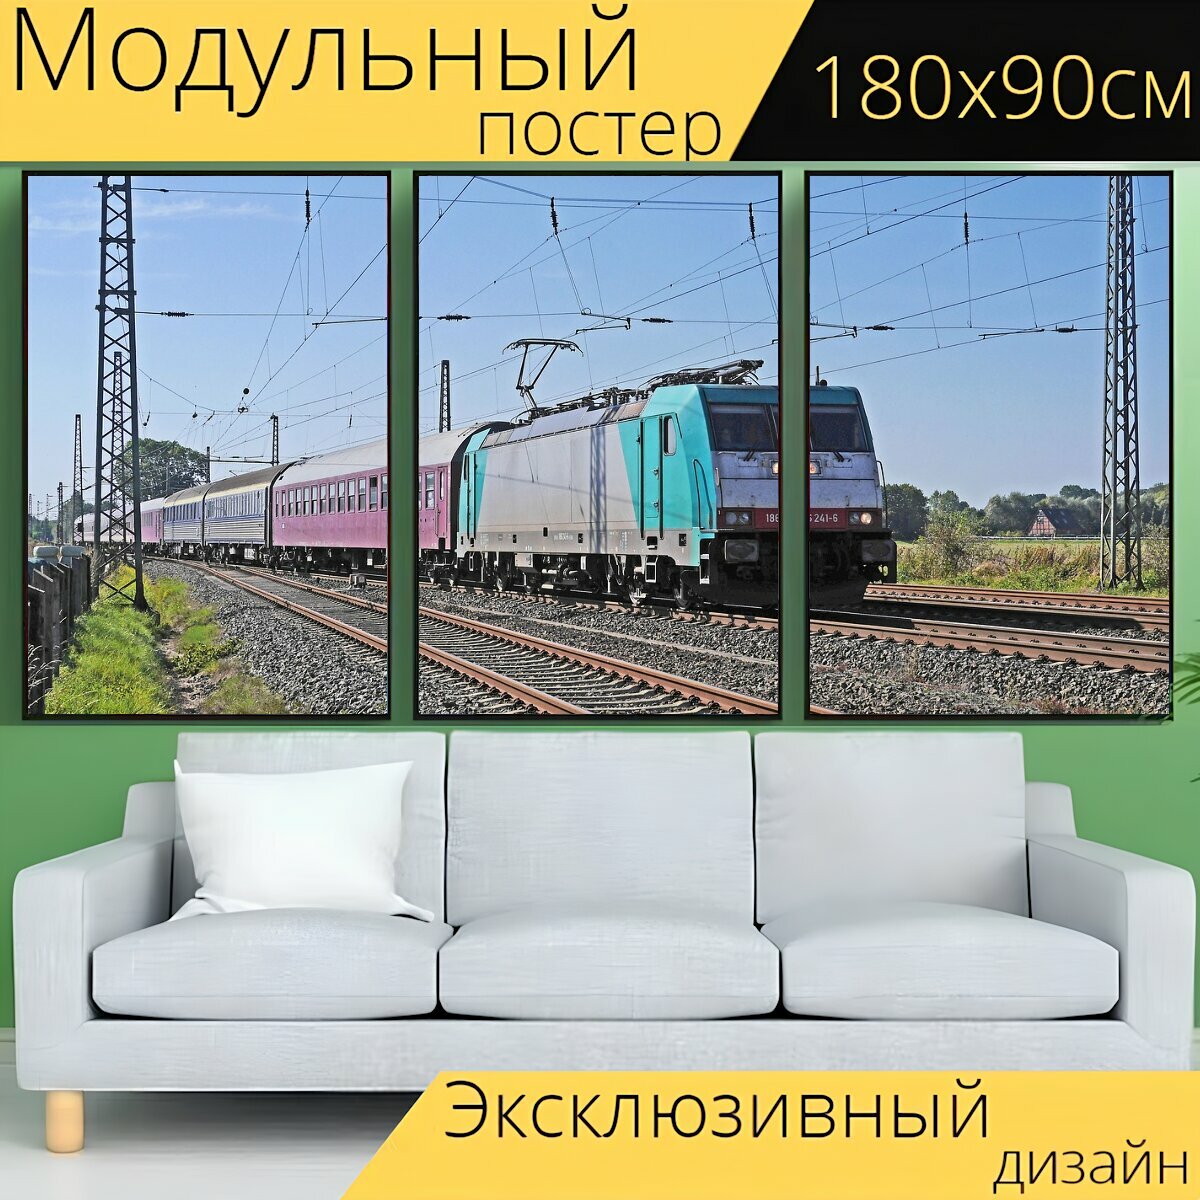 Модульный постер "Чартерный поезд, специальный поезд, частная железная дорога" 180 x 90 см. для интерьера